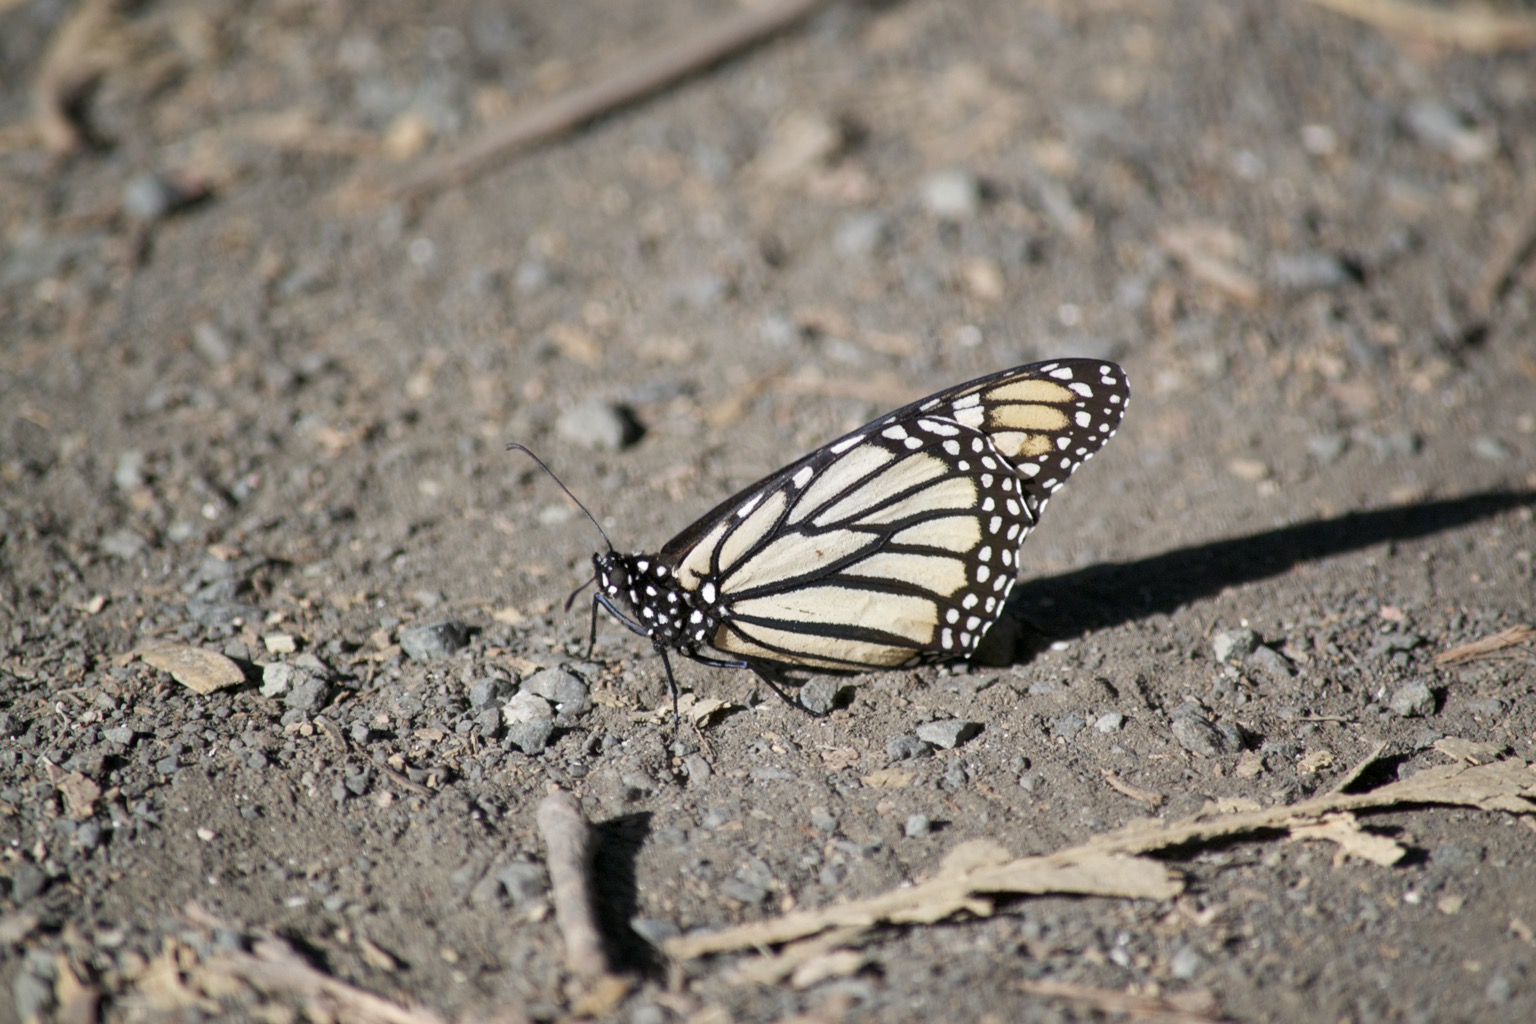 Monarch on ground.